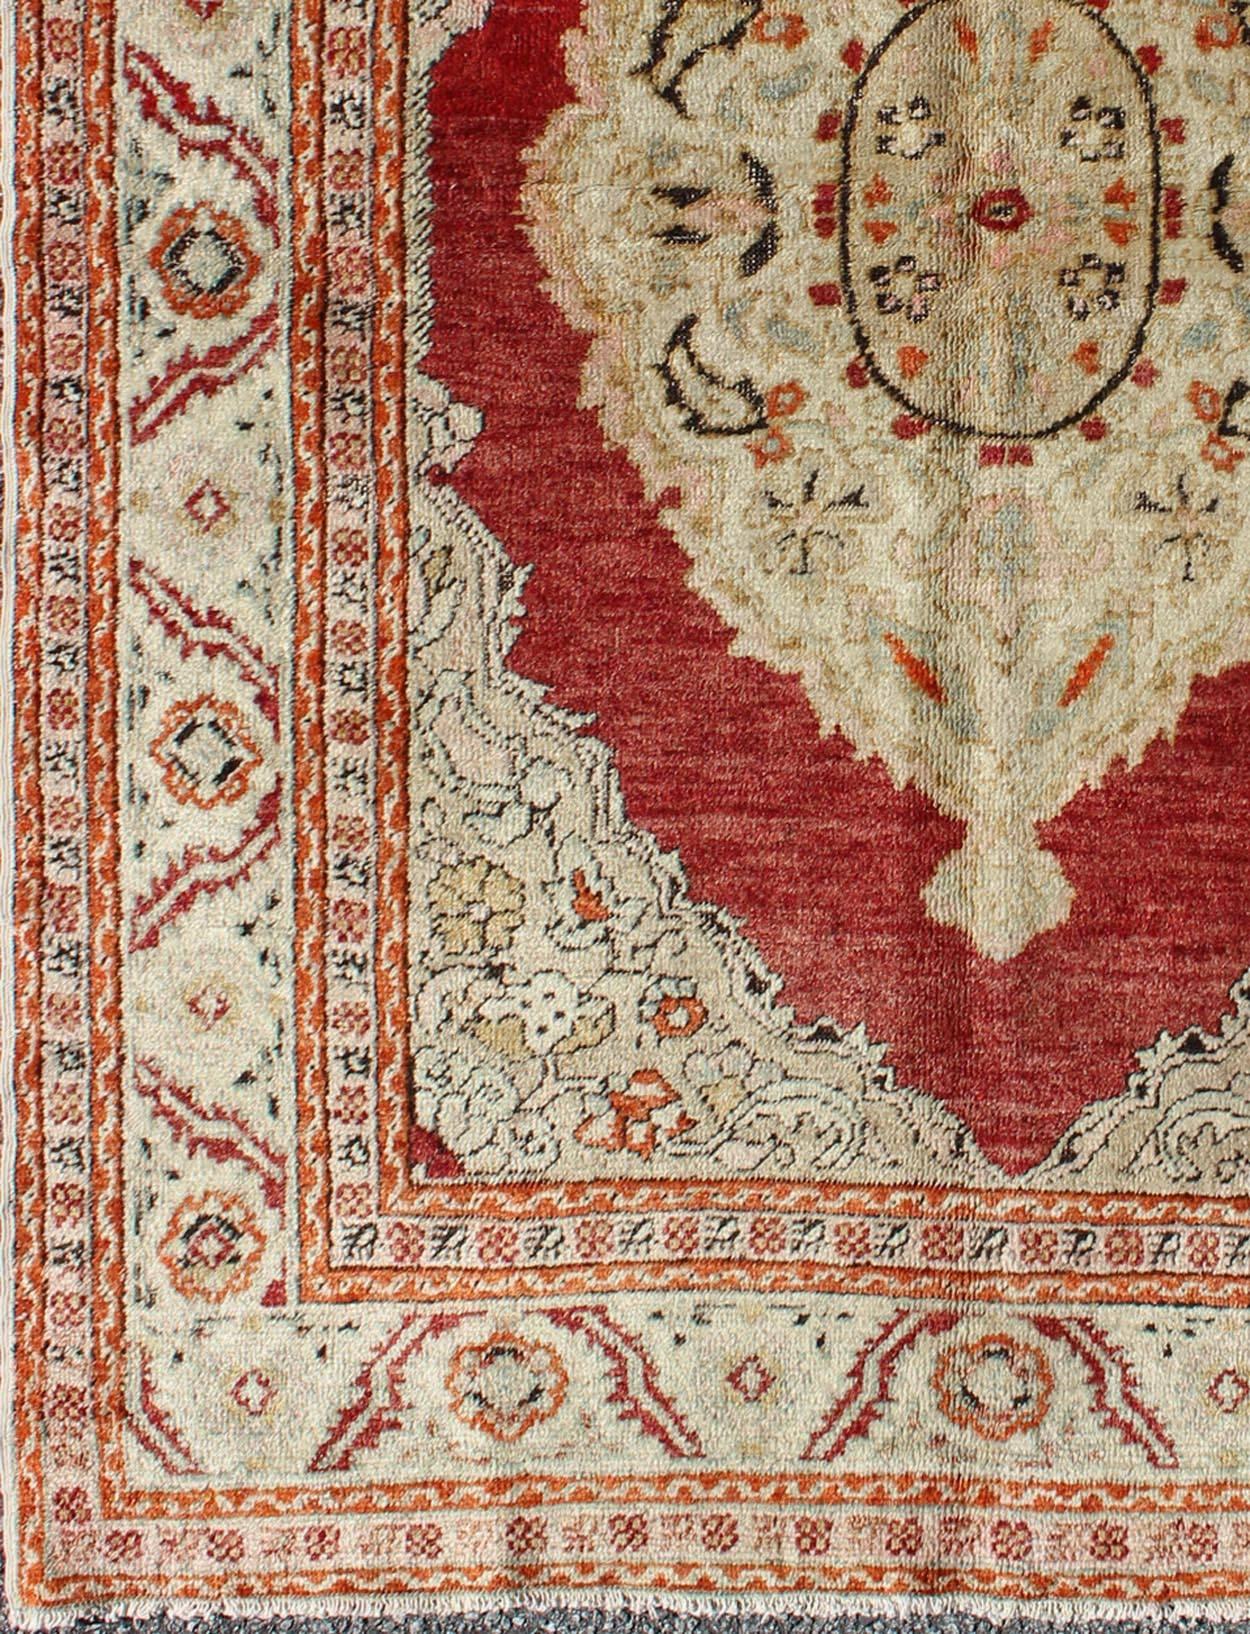 Antiker Oushak-Teppich mit botanischen Motiven in Elfenbein und Hellrot
rug/na-74560,  herkunft/Türkei

Dieser spektakuläre antike türkische Oushak ist ein prächtiges Beispiel für den königlichen Geschmack, der nach Perfektion in Bezug auf